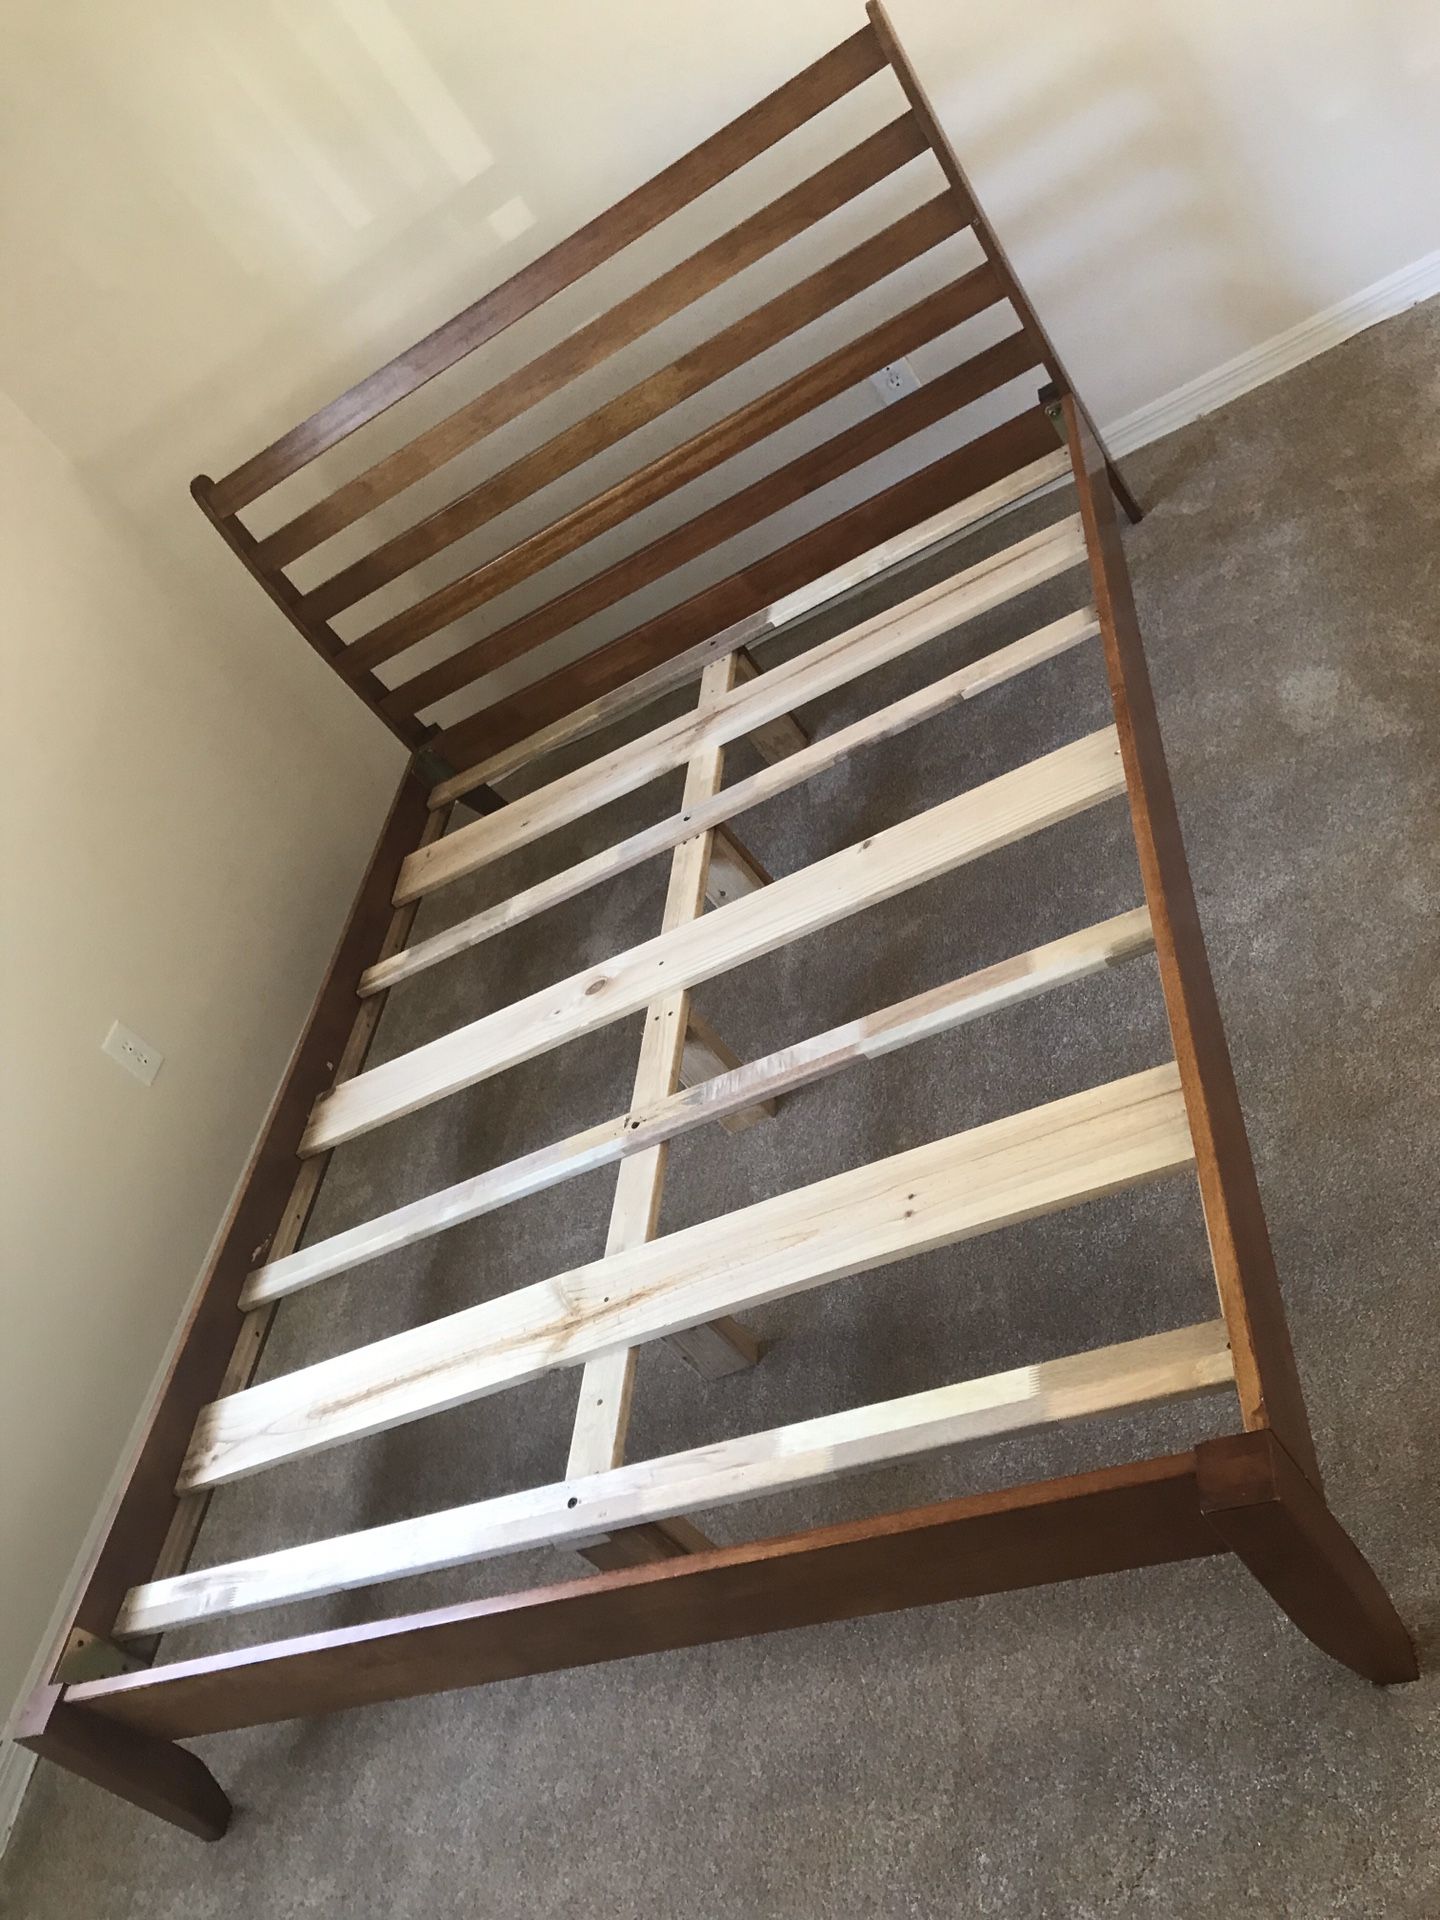 King wood bed frame